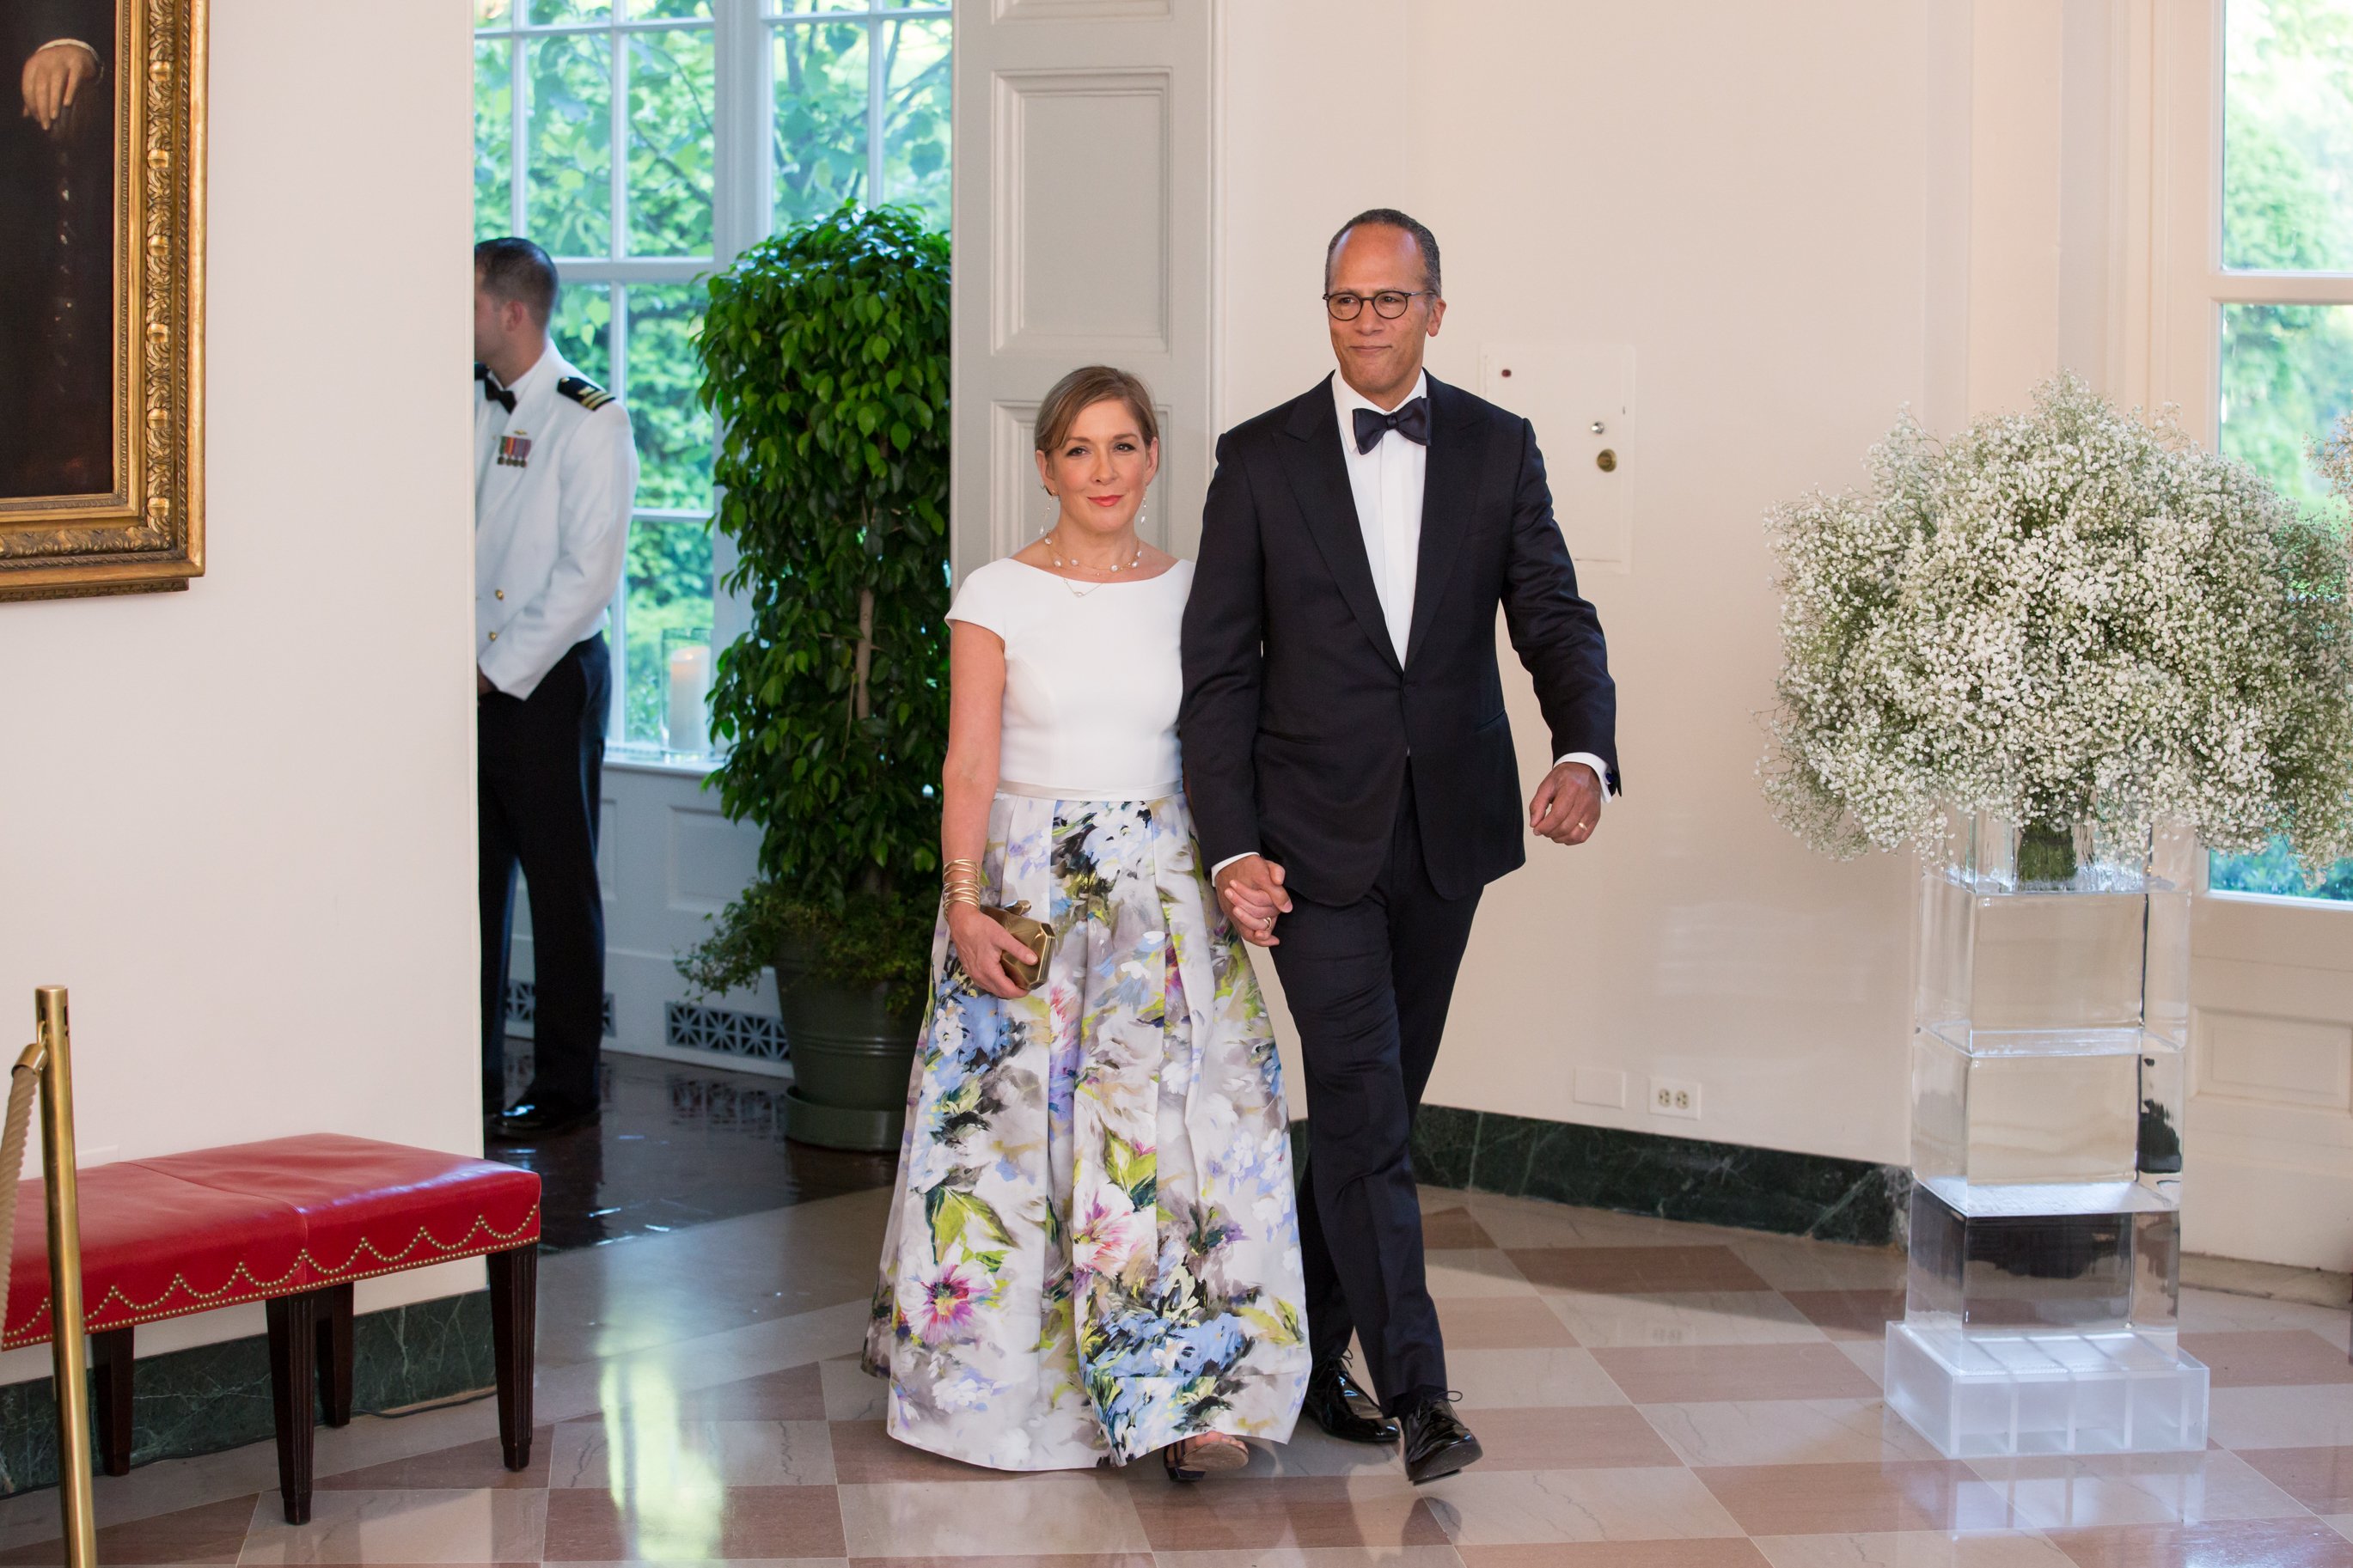 Lester Holt et son épouse, Carol Hagen-Holt, arrivent au dîner d'État nordique le vendredi 13 mai 2015 à la Maison Blanche | Source : Getty Images